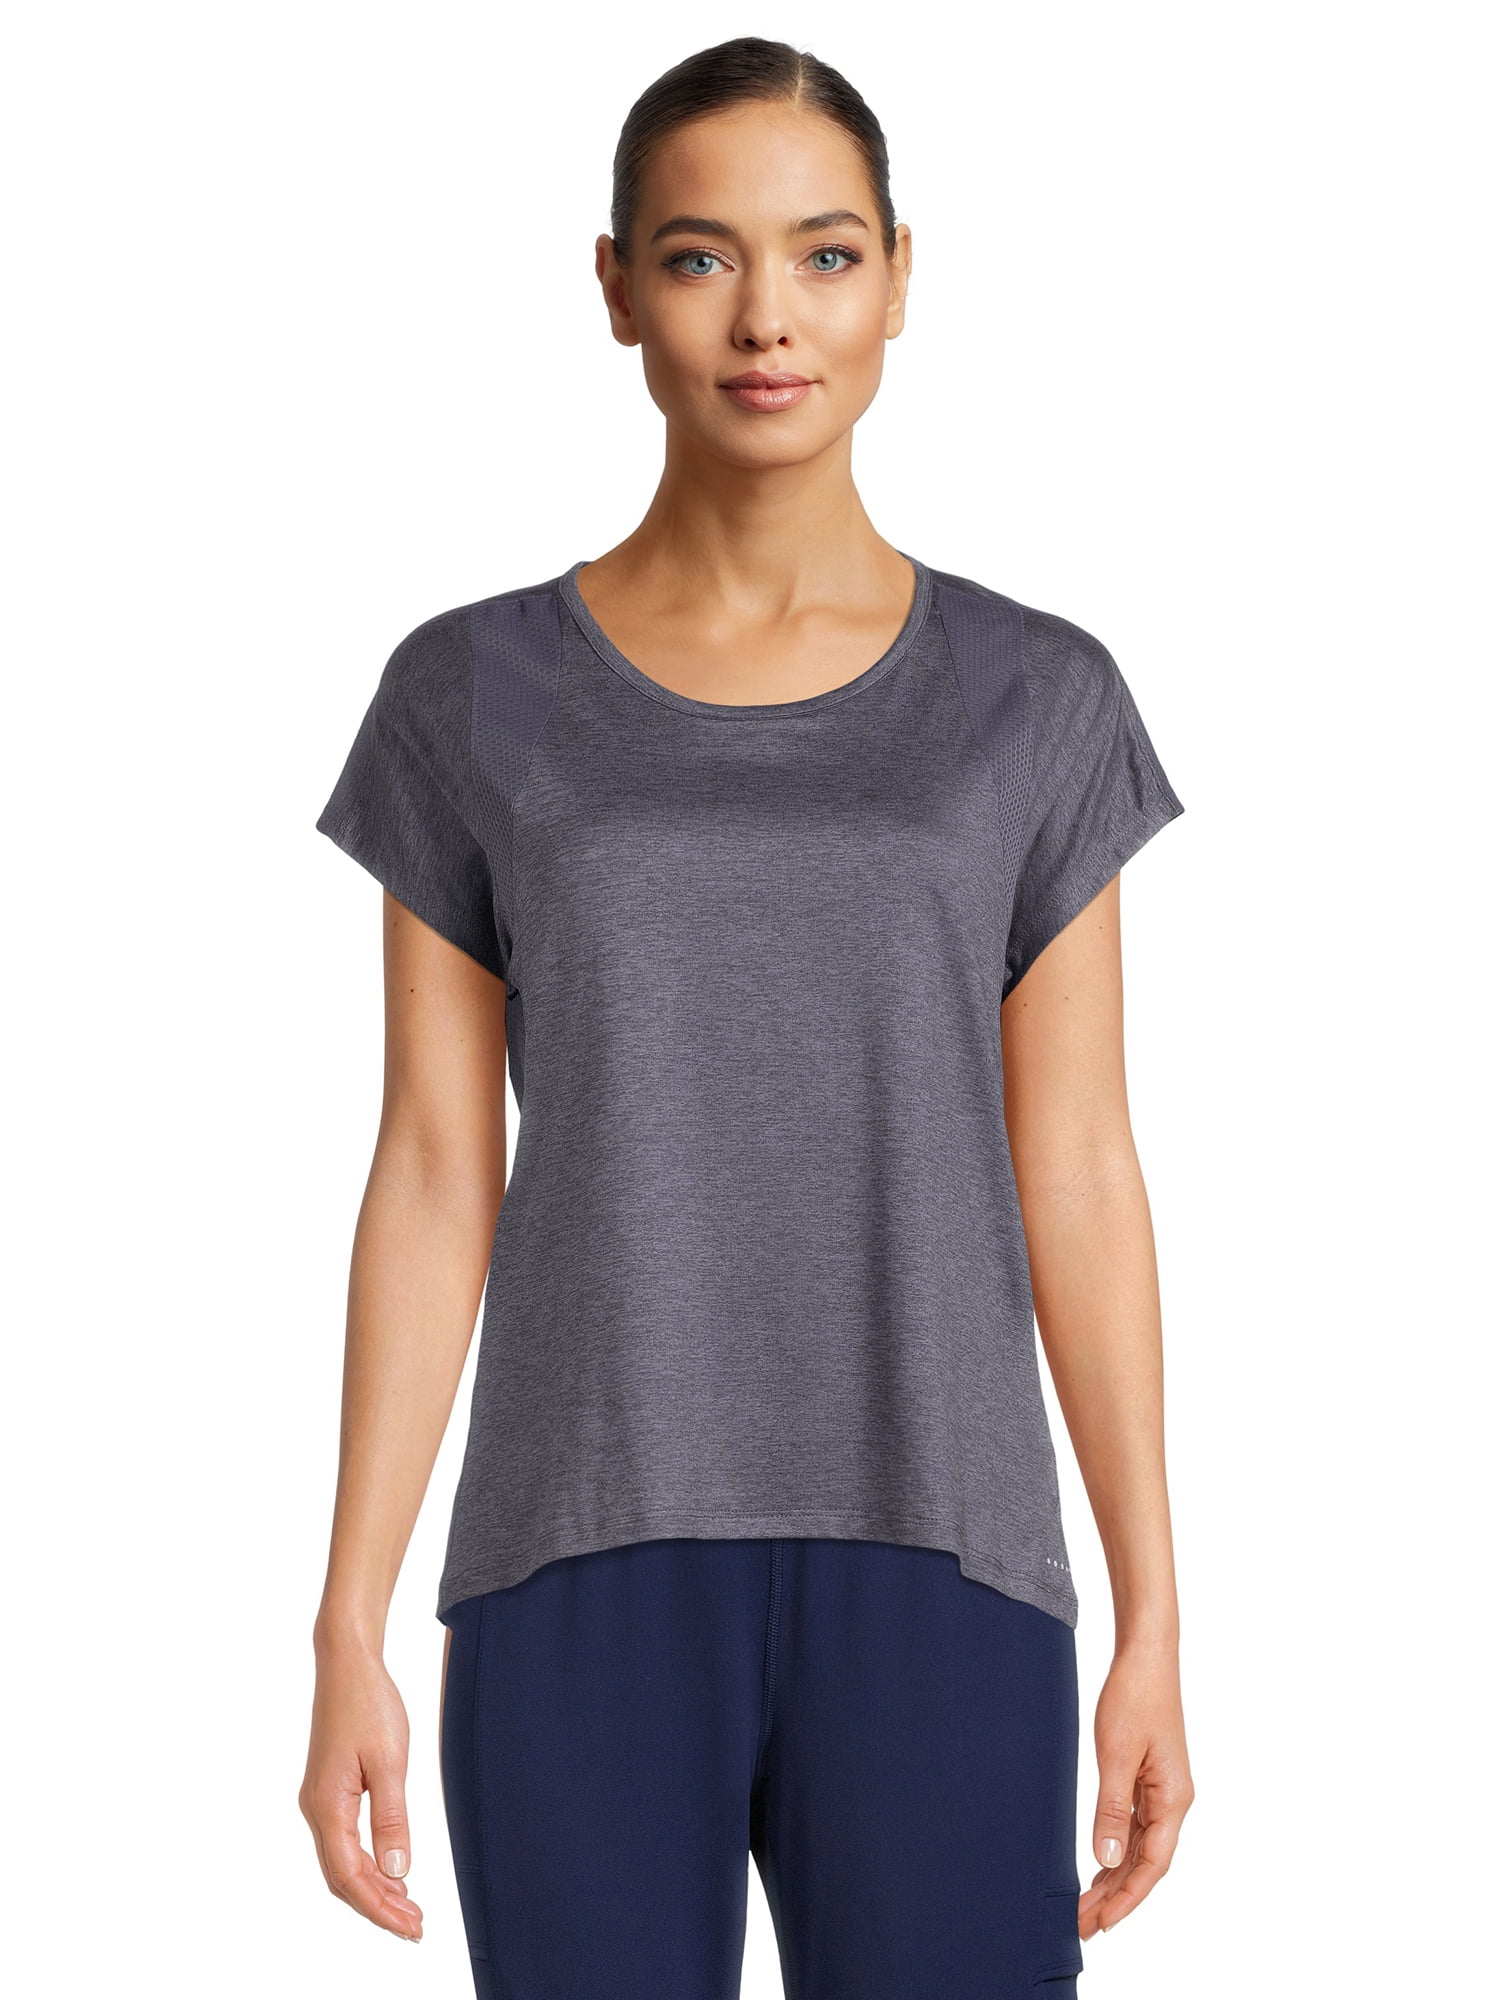 Avia Women's Short Sleeve Performance T-Shirt - Walmart.com